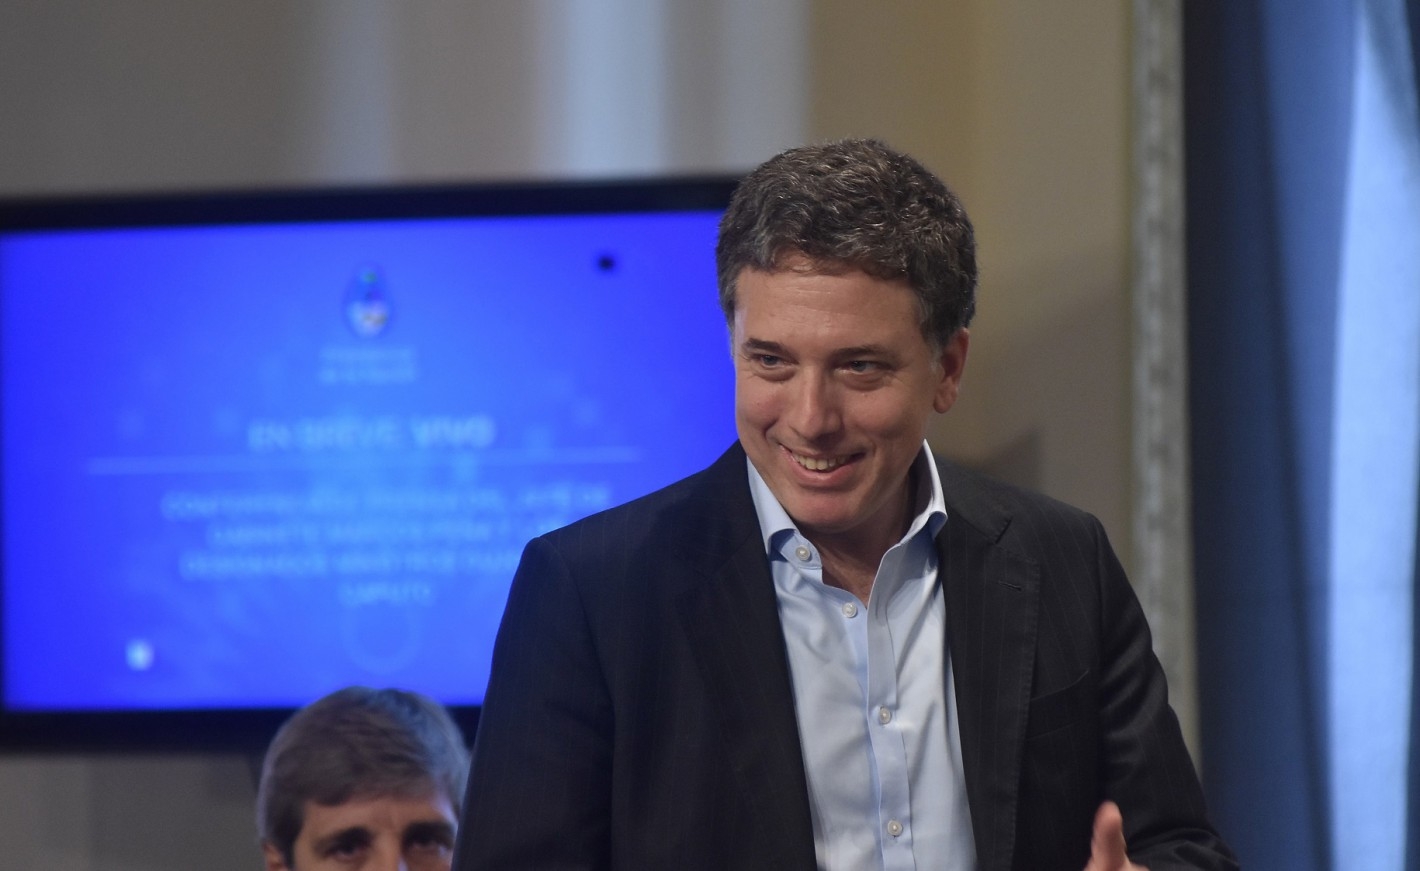 Dujovne: “No hay chance de que Argentina no cumpla con las metas fiscales”